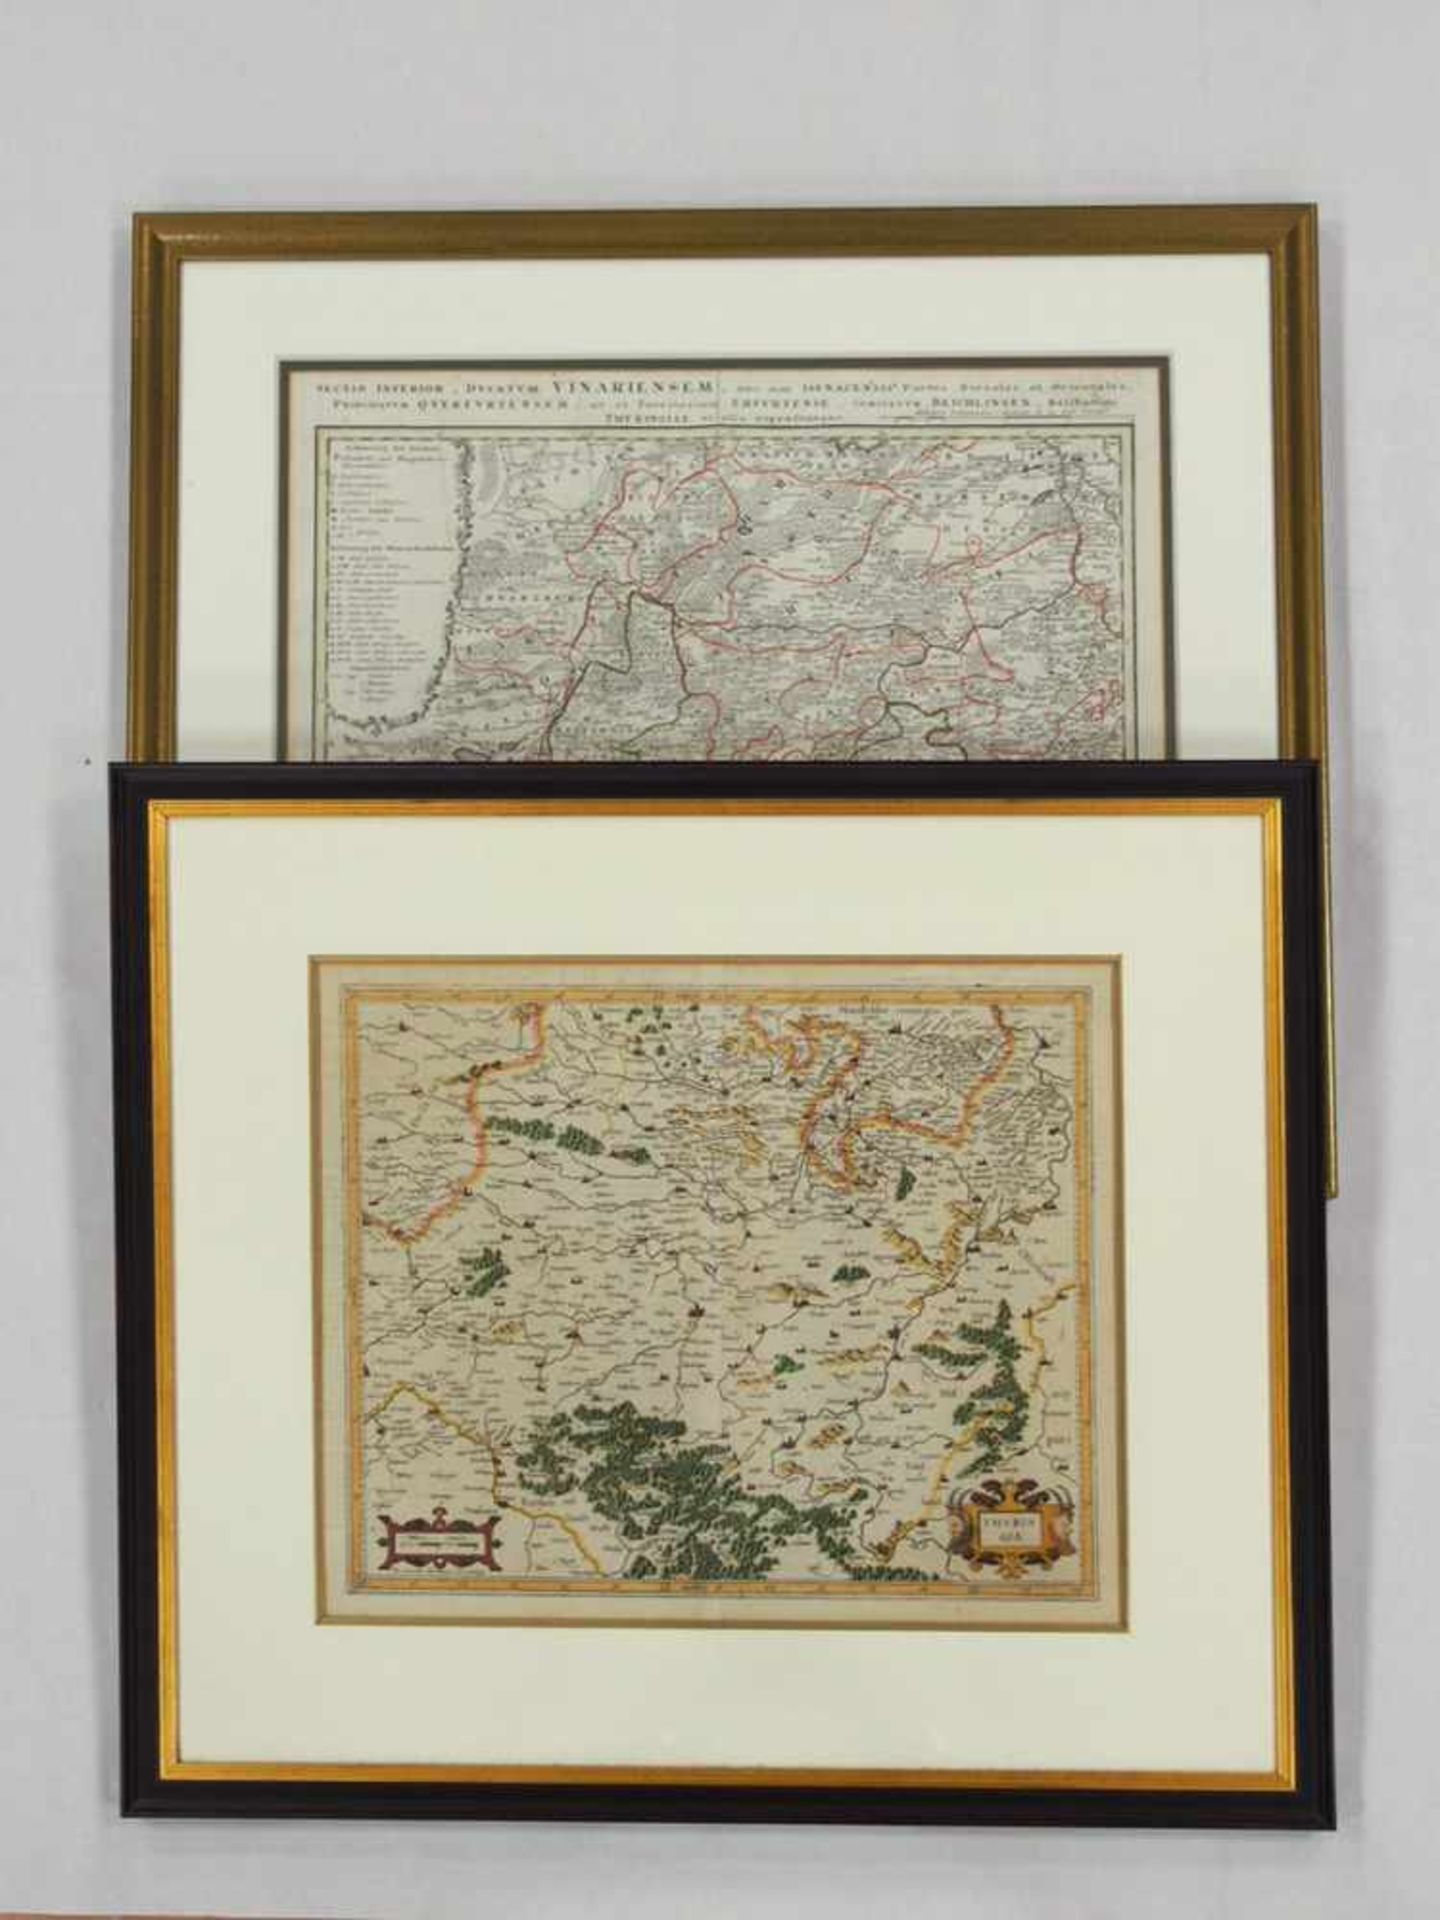 MERCATOR, Gerhard1512-1594ThuringhiaKupfetsich, altkoloriert, 36,5 x 44 cm, gerahmt unter Glas und